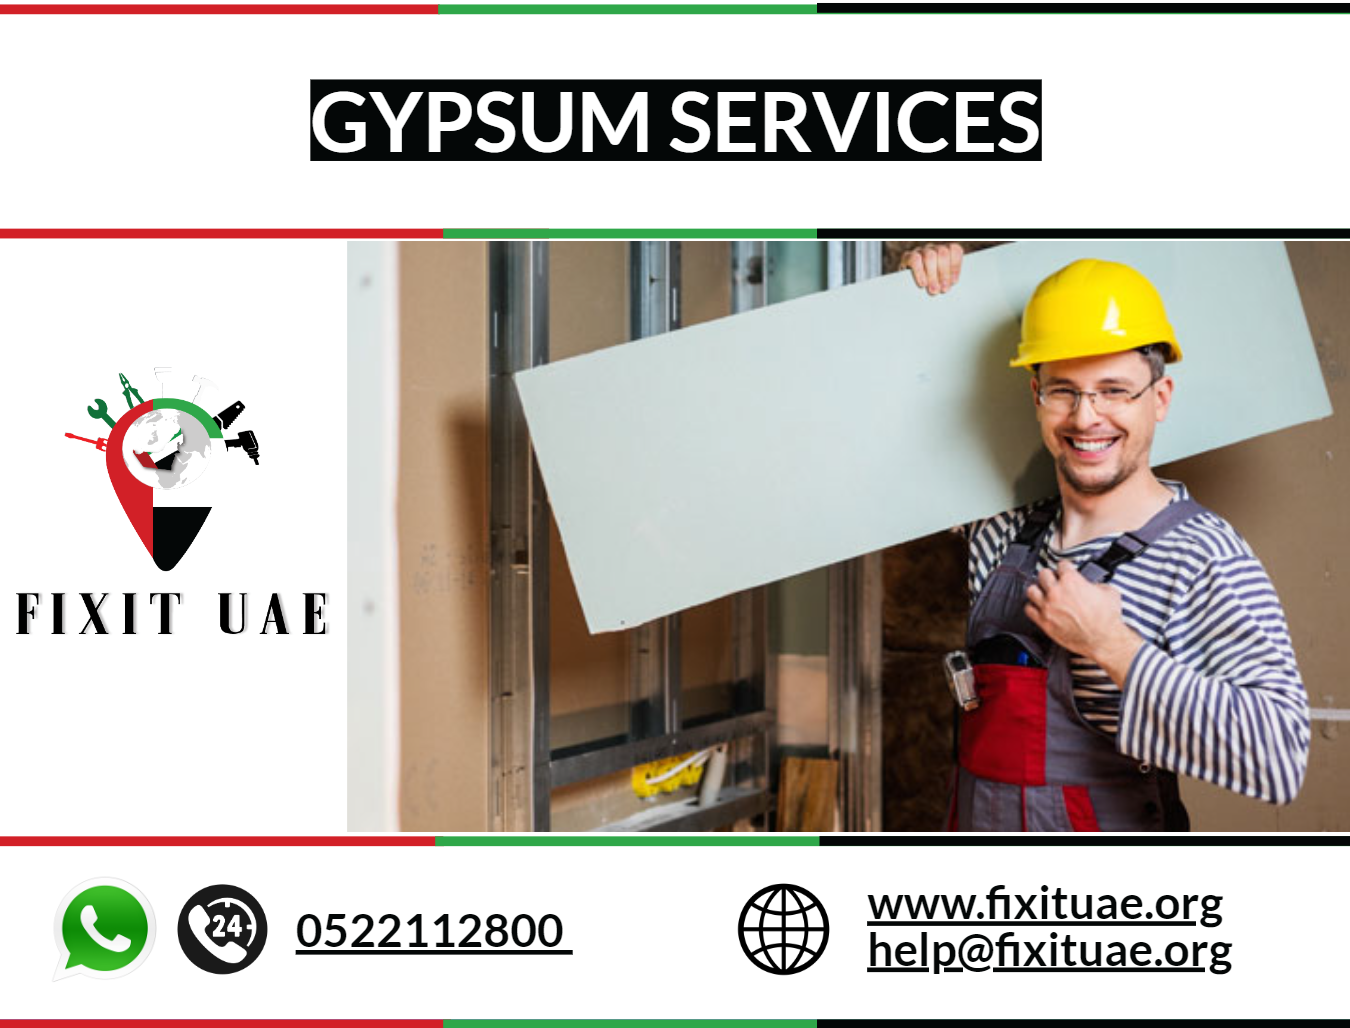 Gypsum Services